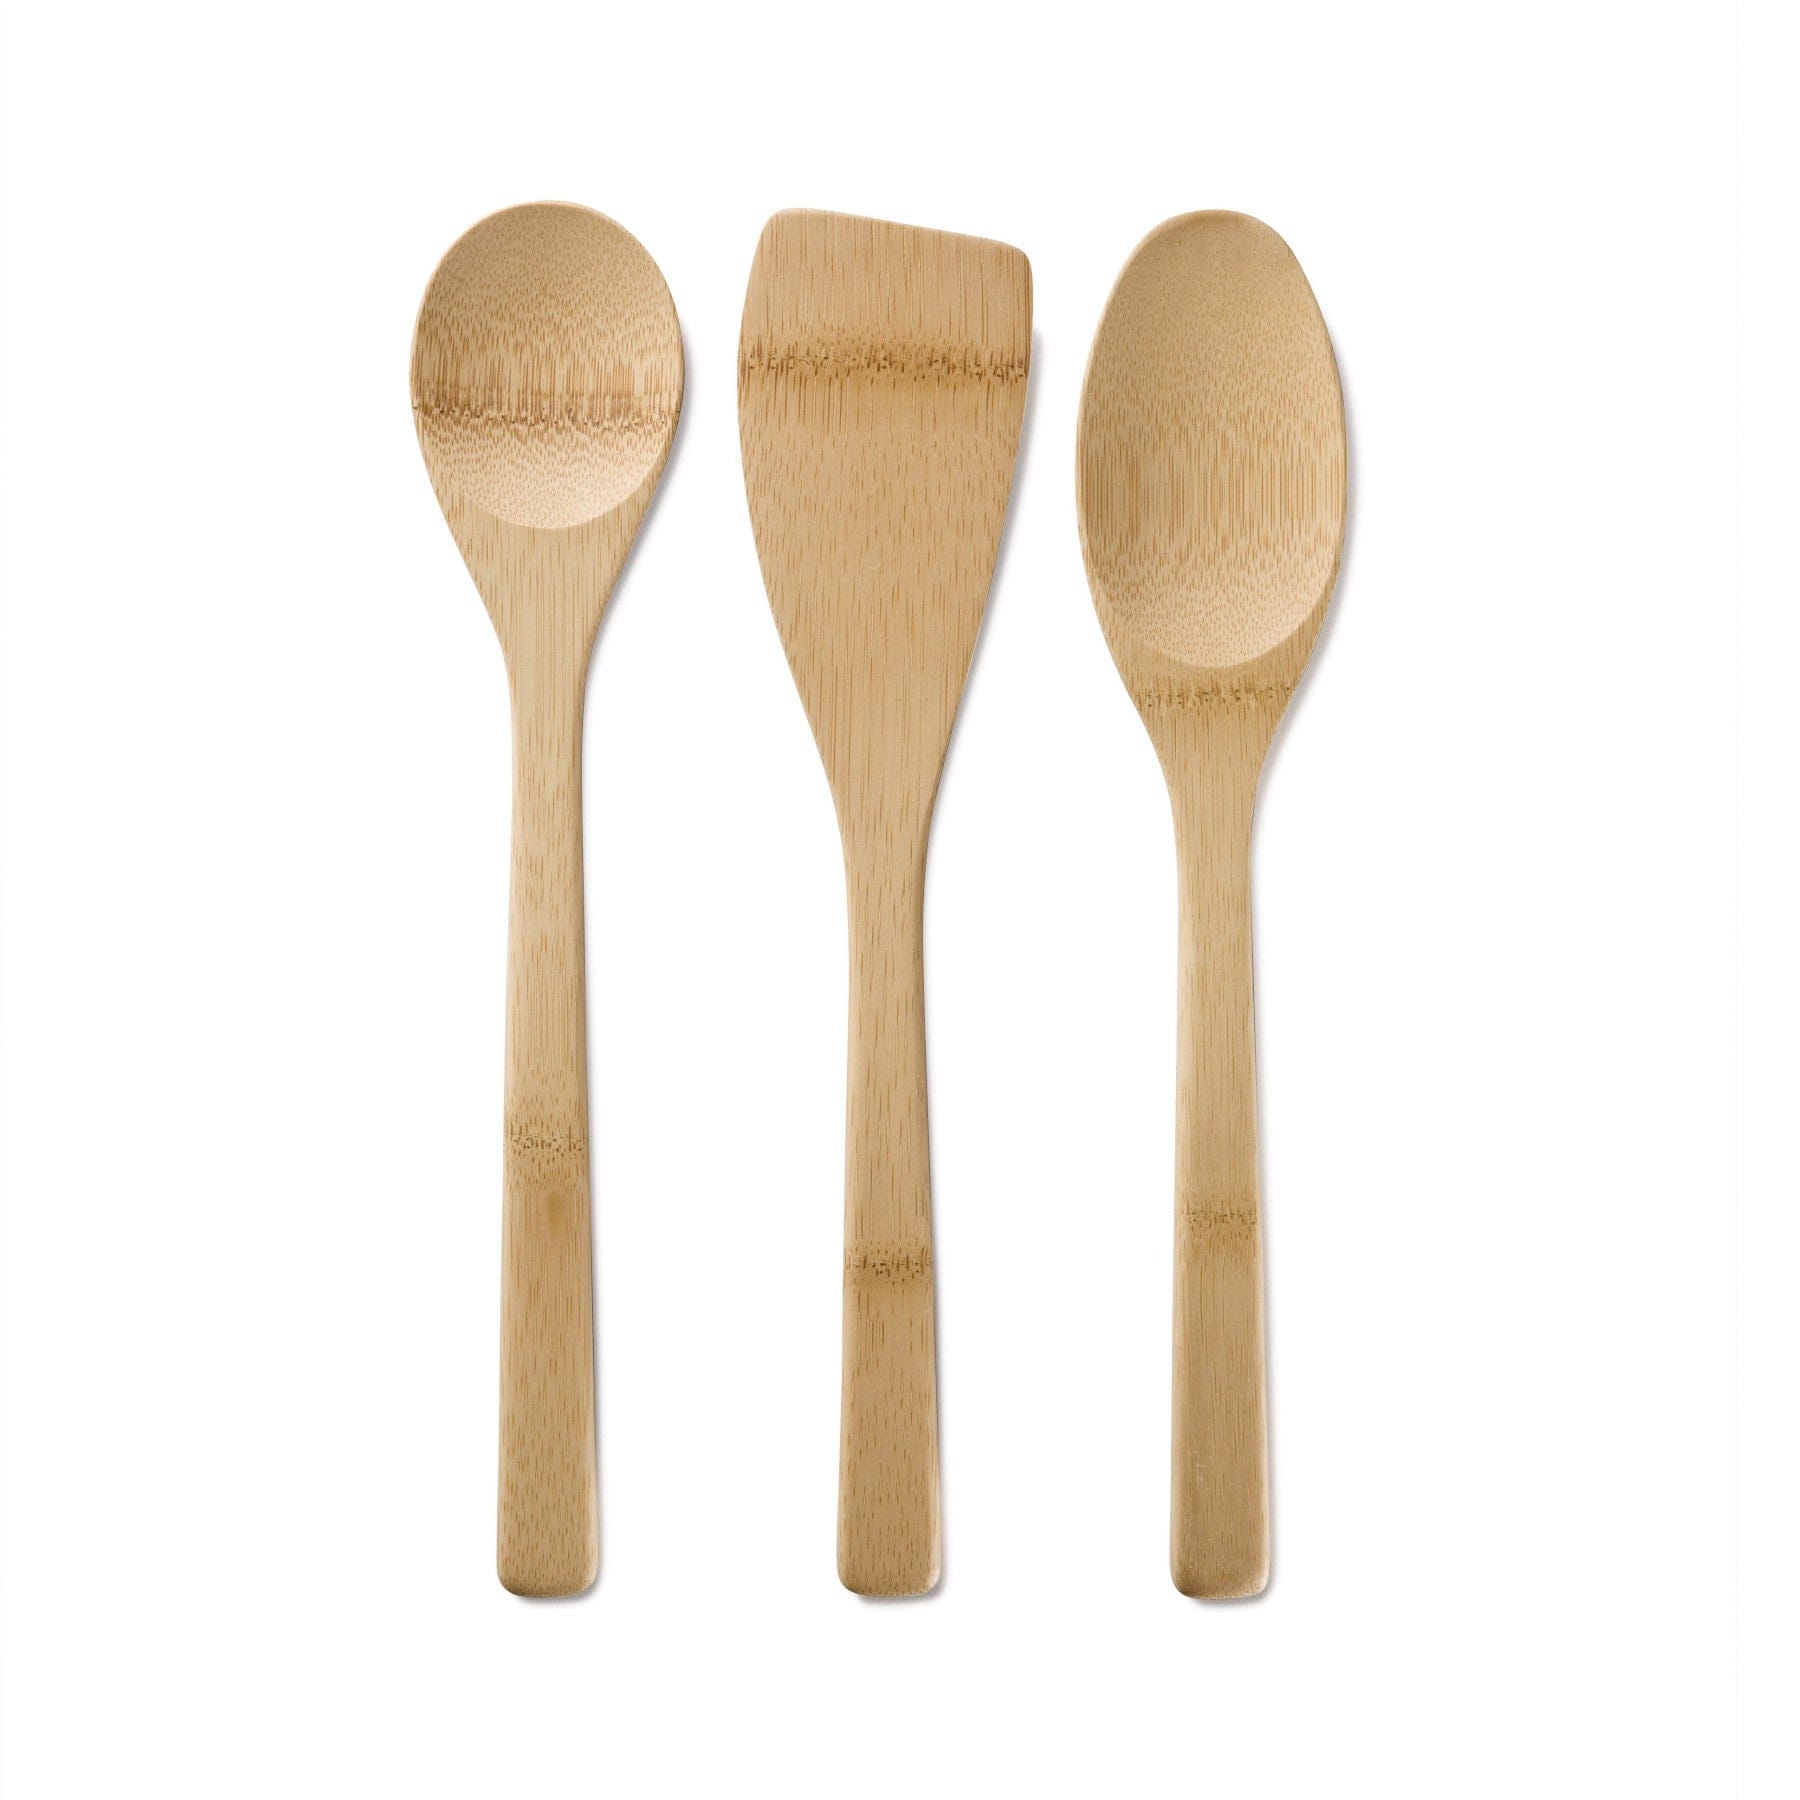 Bamboo kitchen basics utensil set of 3